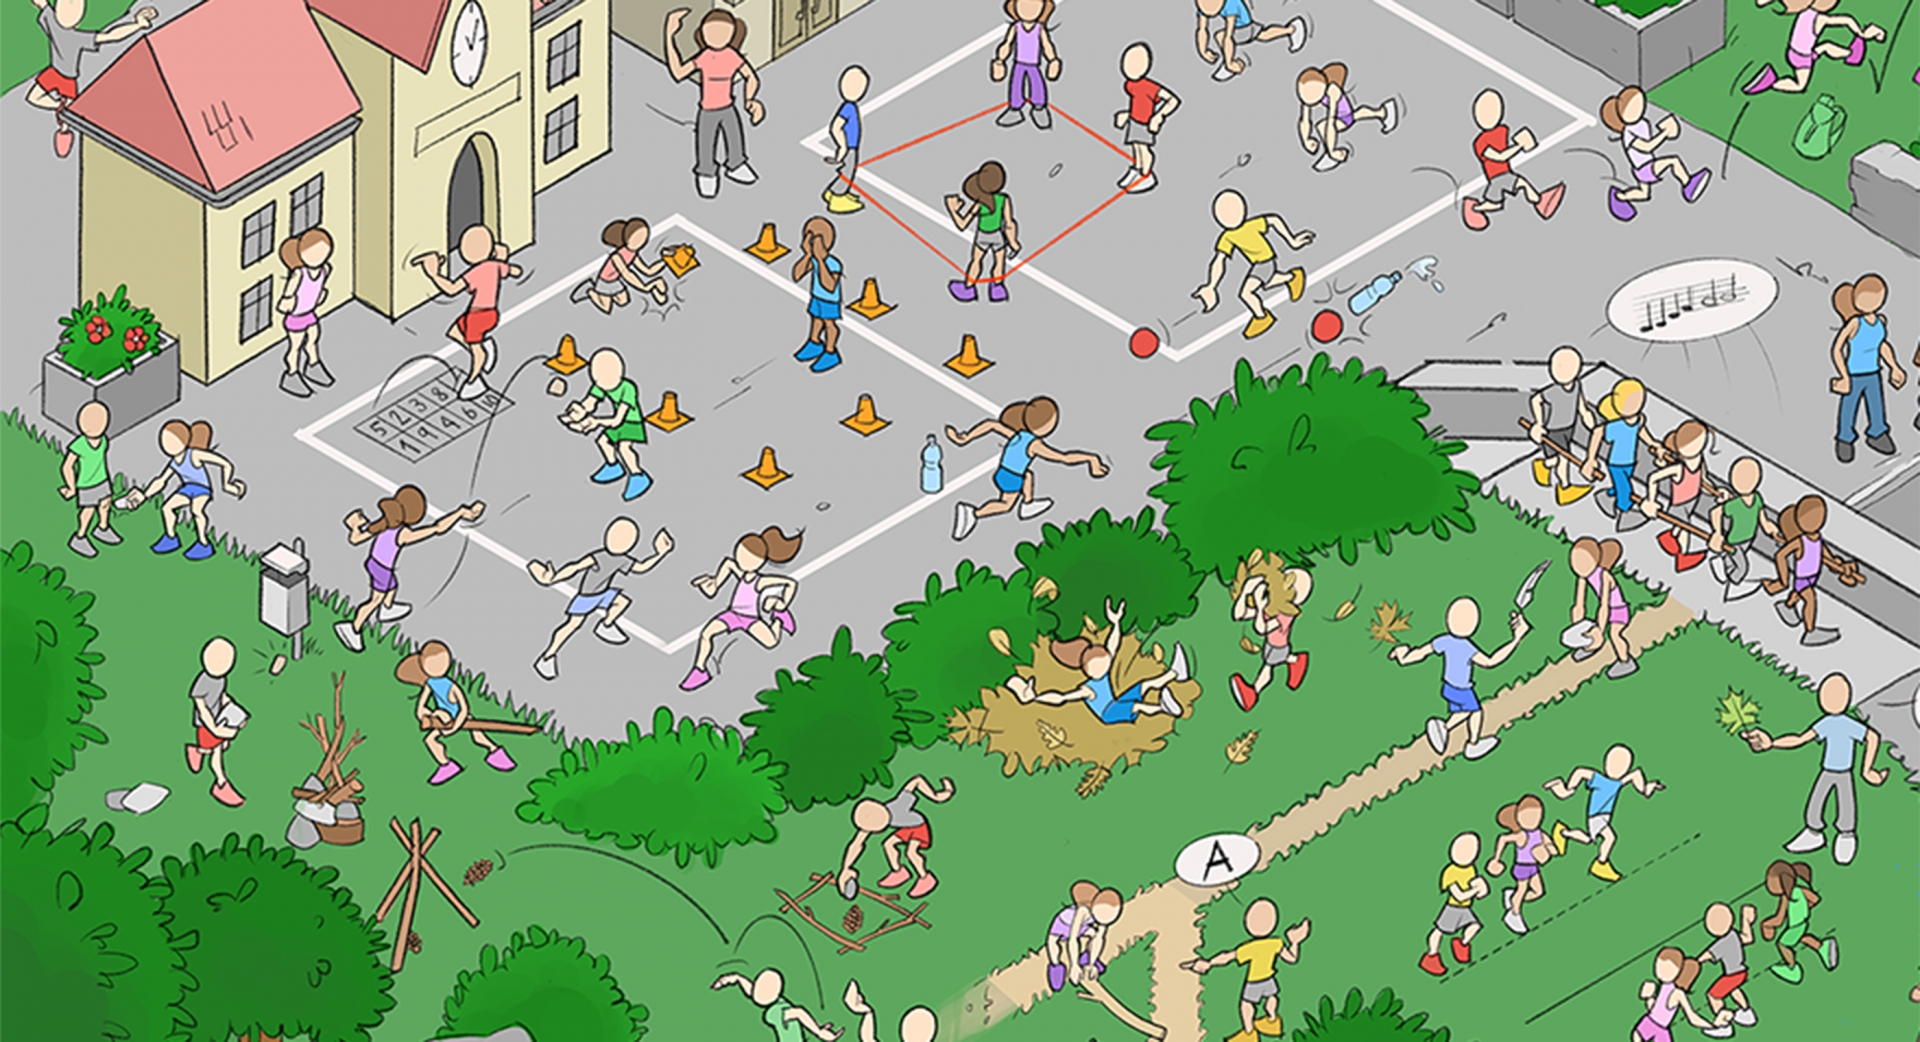 Wimmelbild, Zeichnung: Kinder draussen am Spielen, auf Schulplantz, im Wald, unterwegs. 